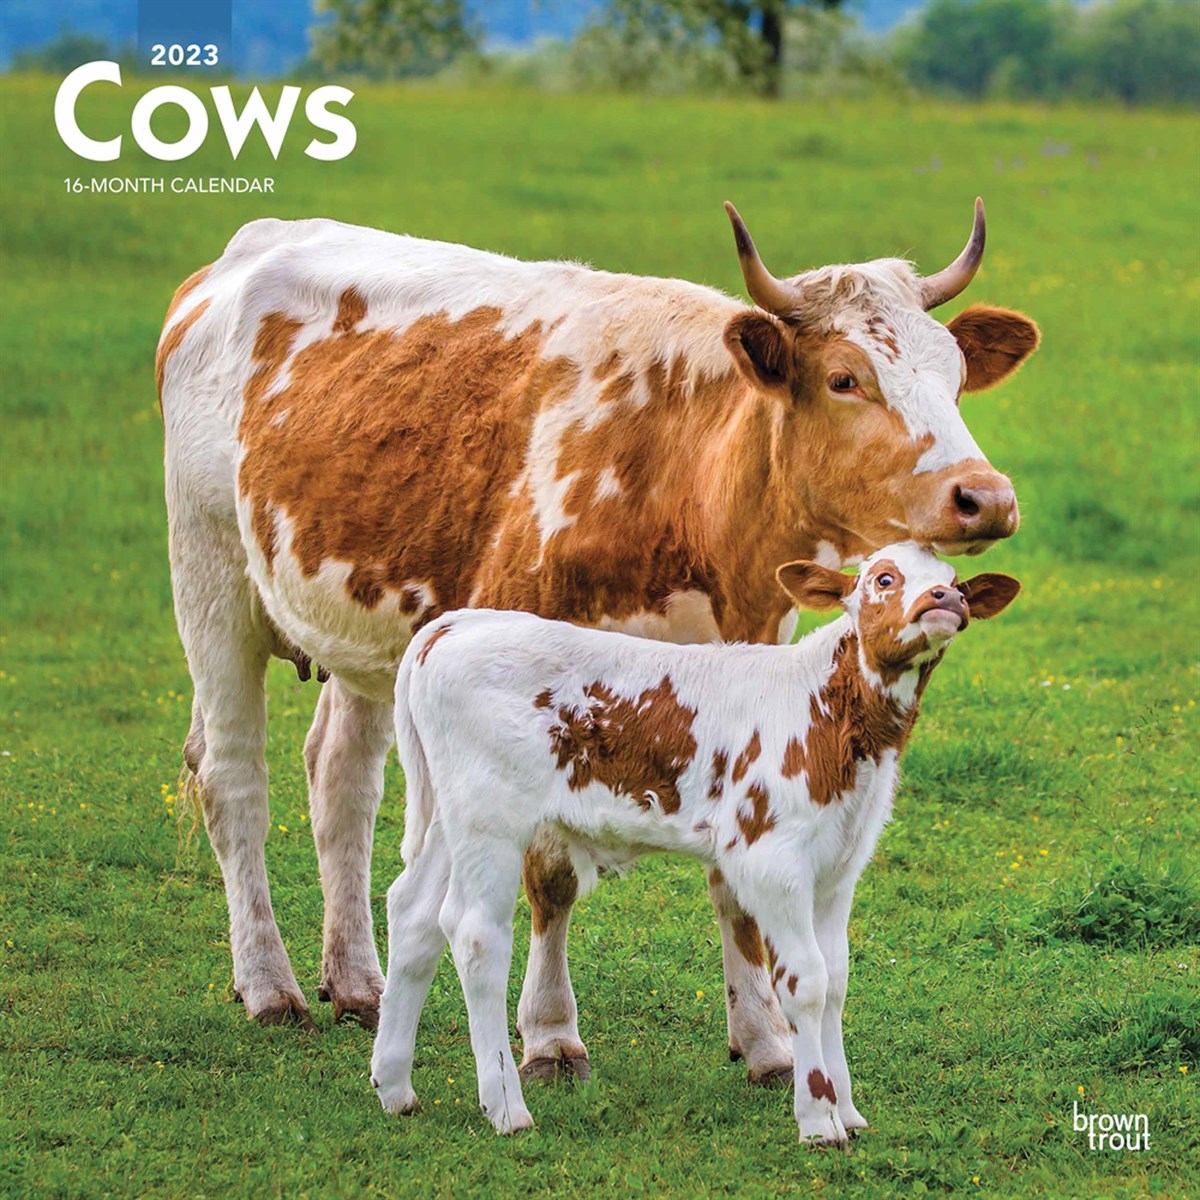 Cows 2023 Calendars